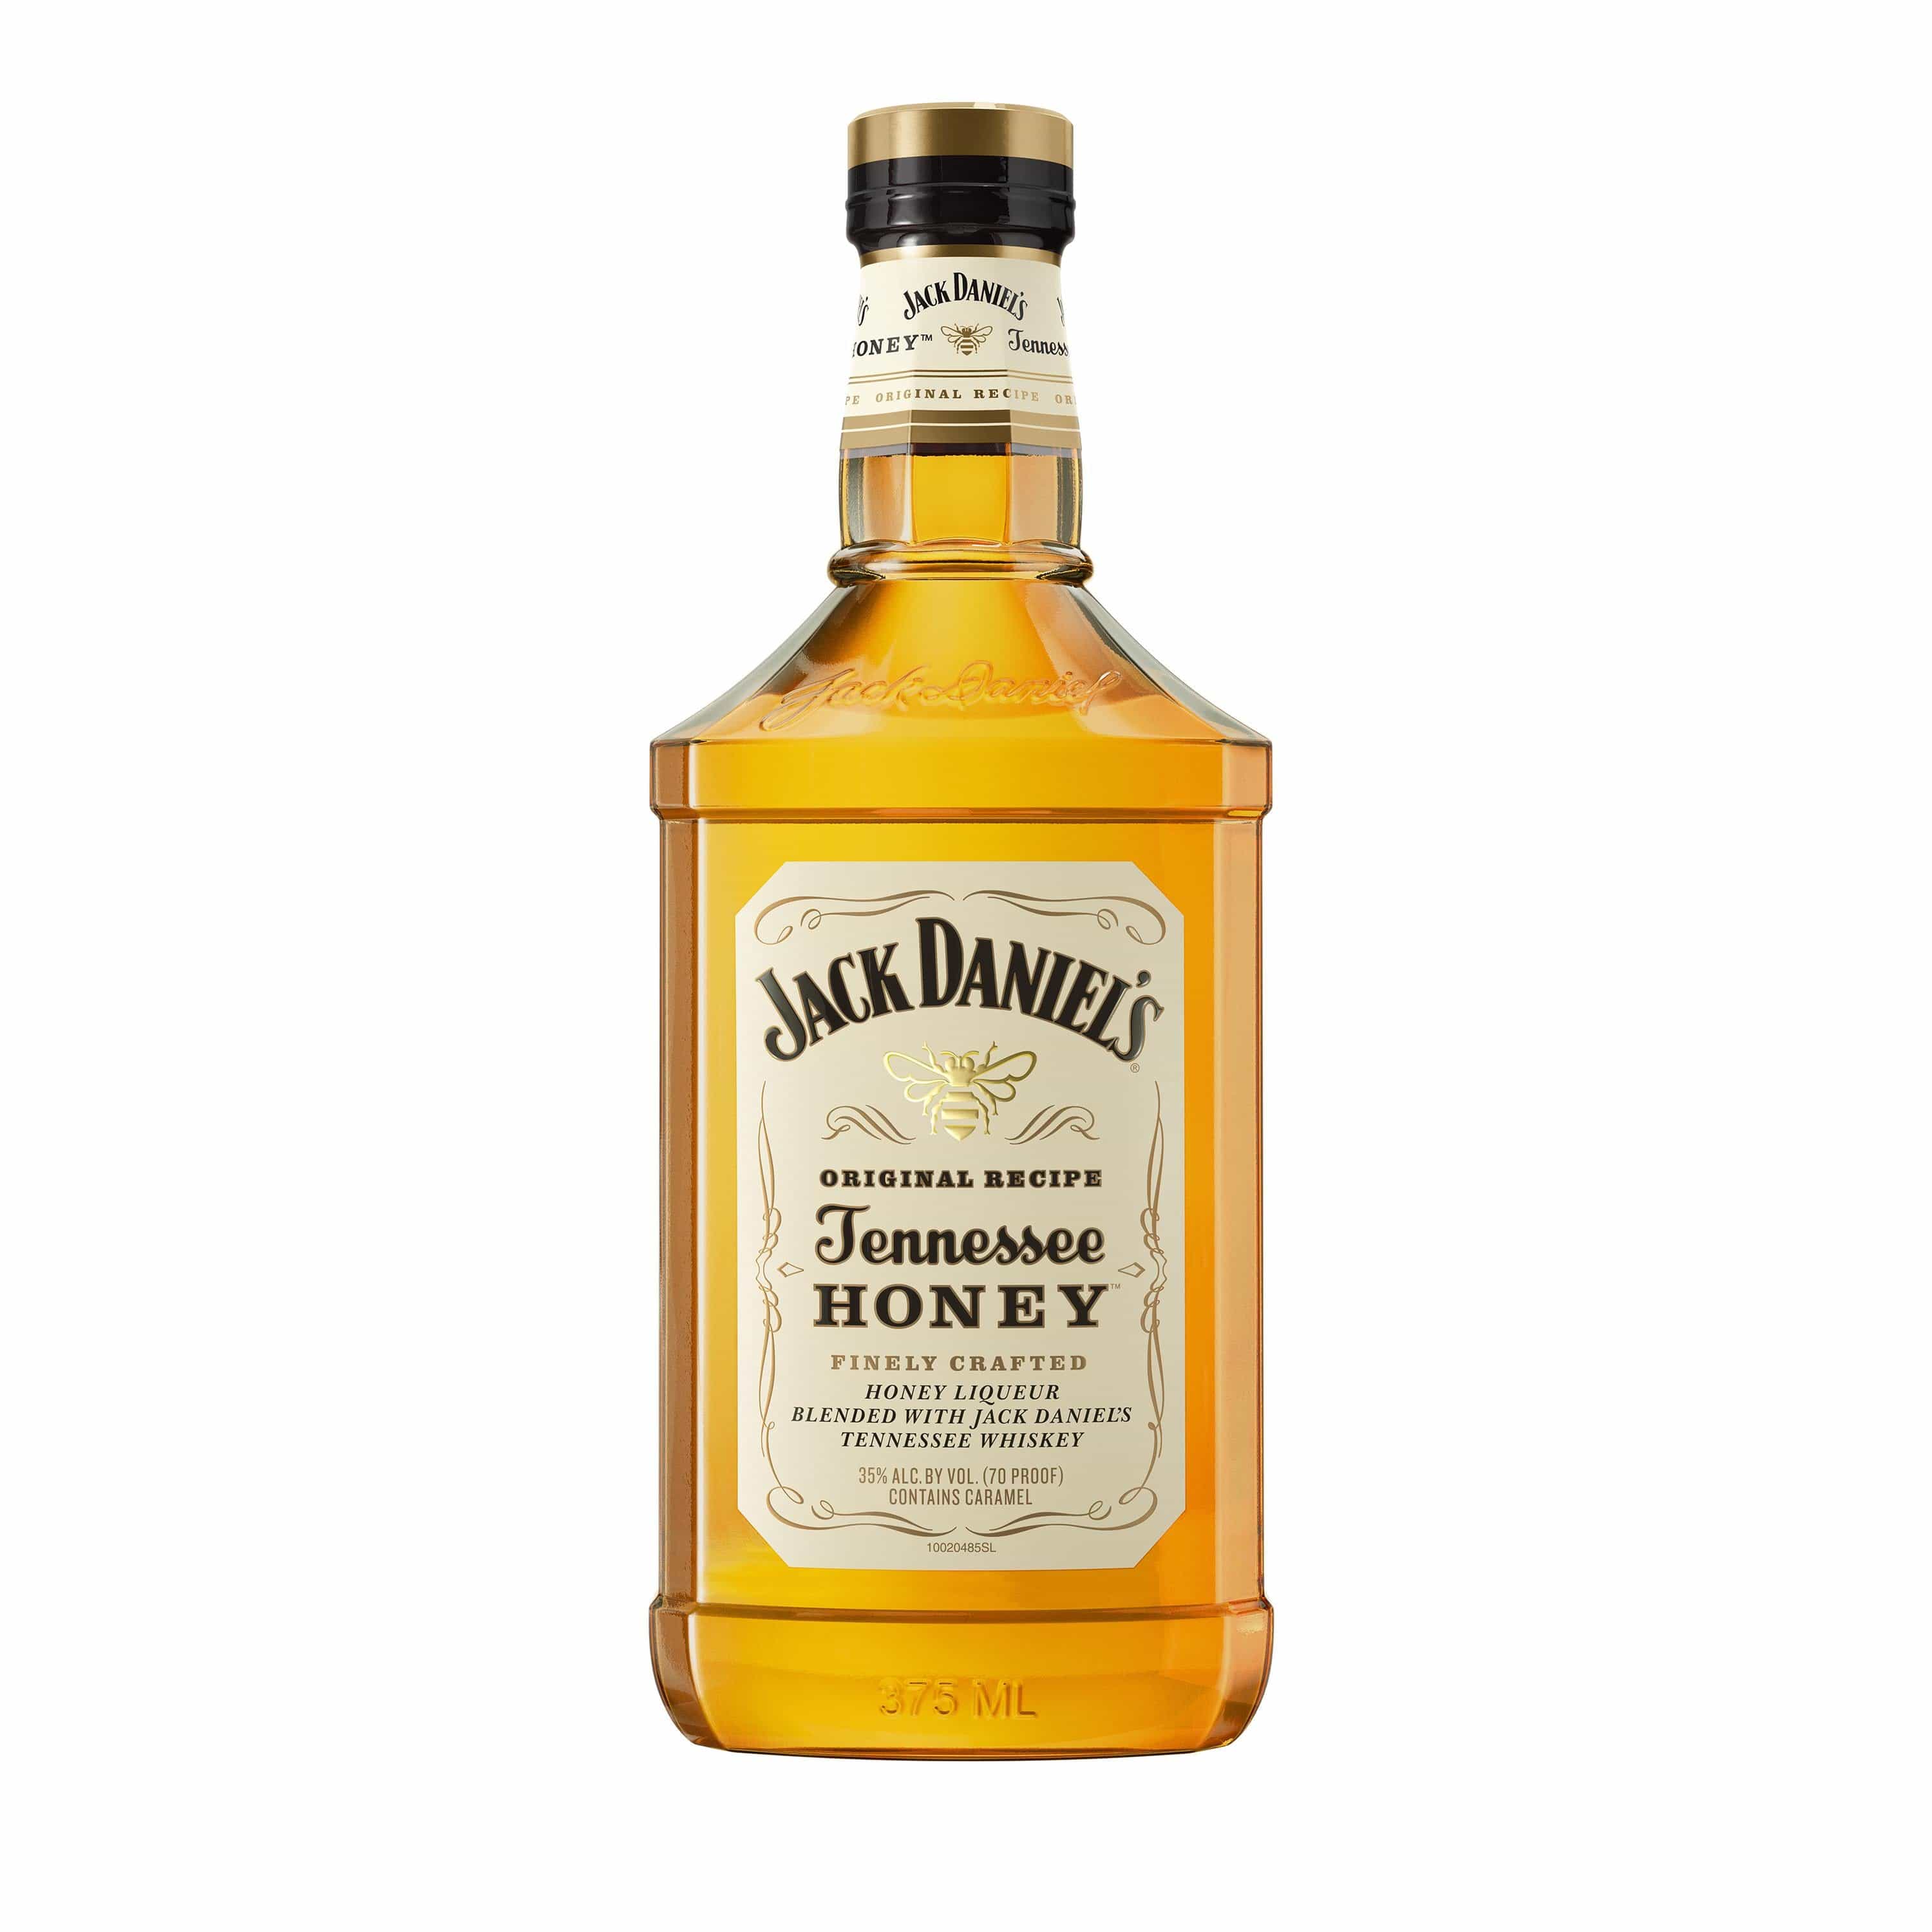 Jack Daniels Bottle Size: Exploring Bourbon Bottle Options